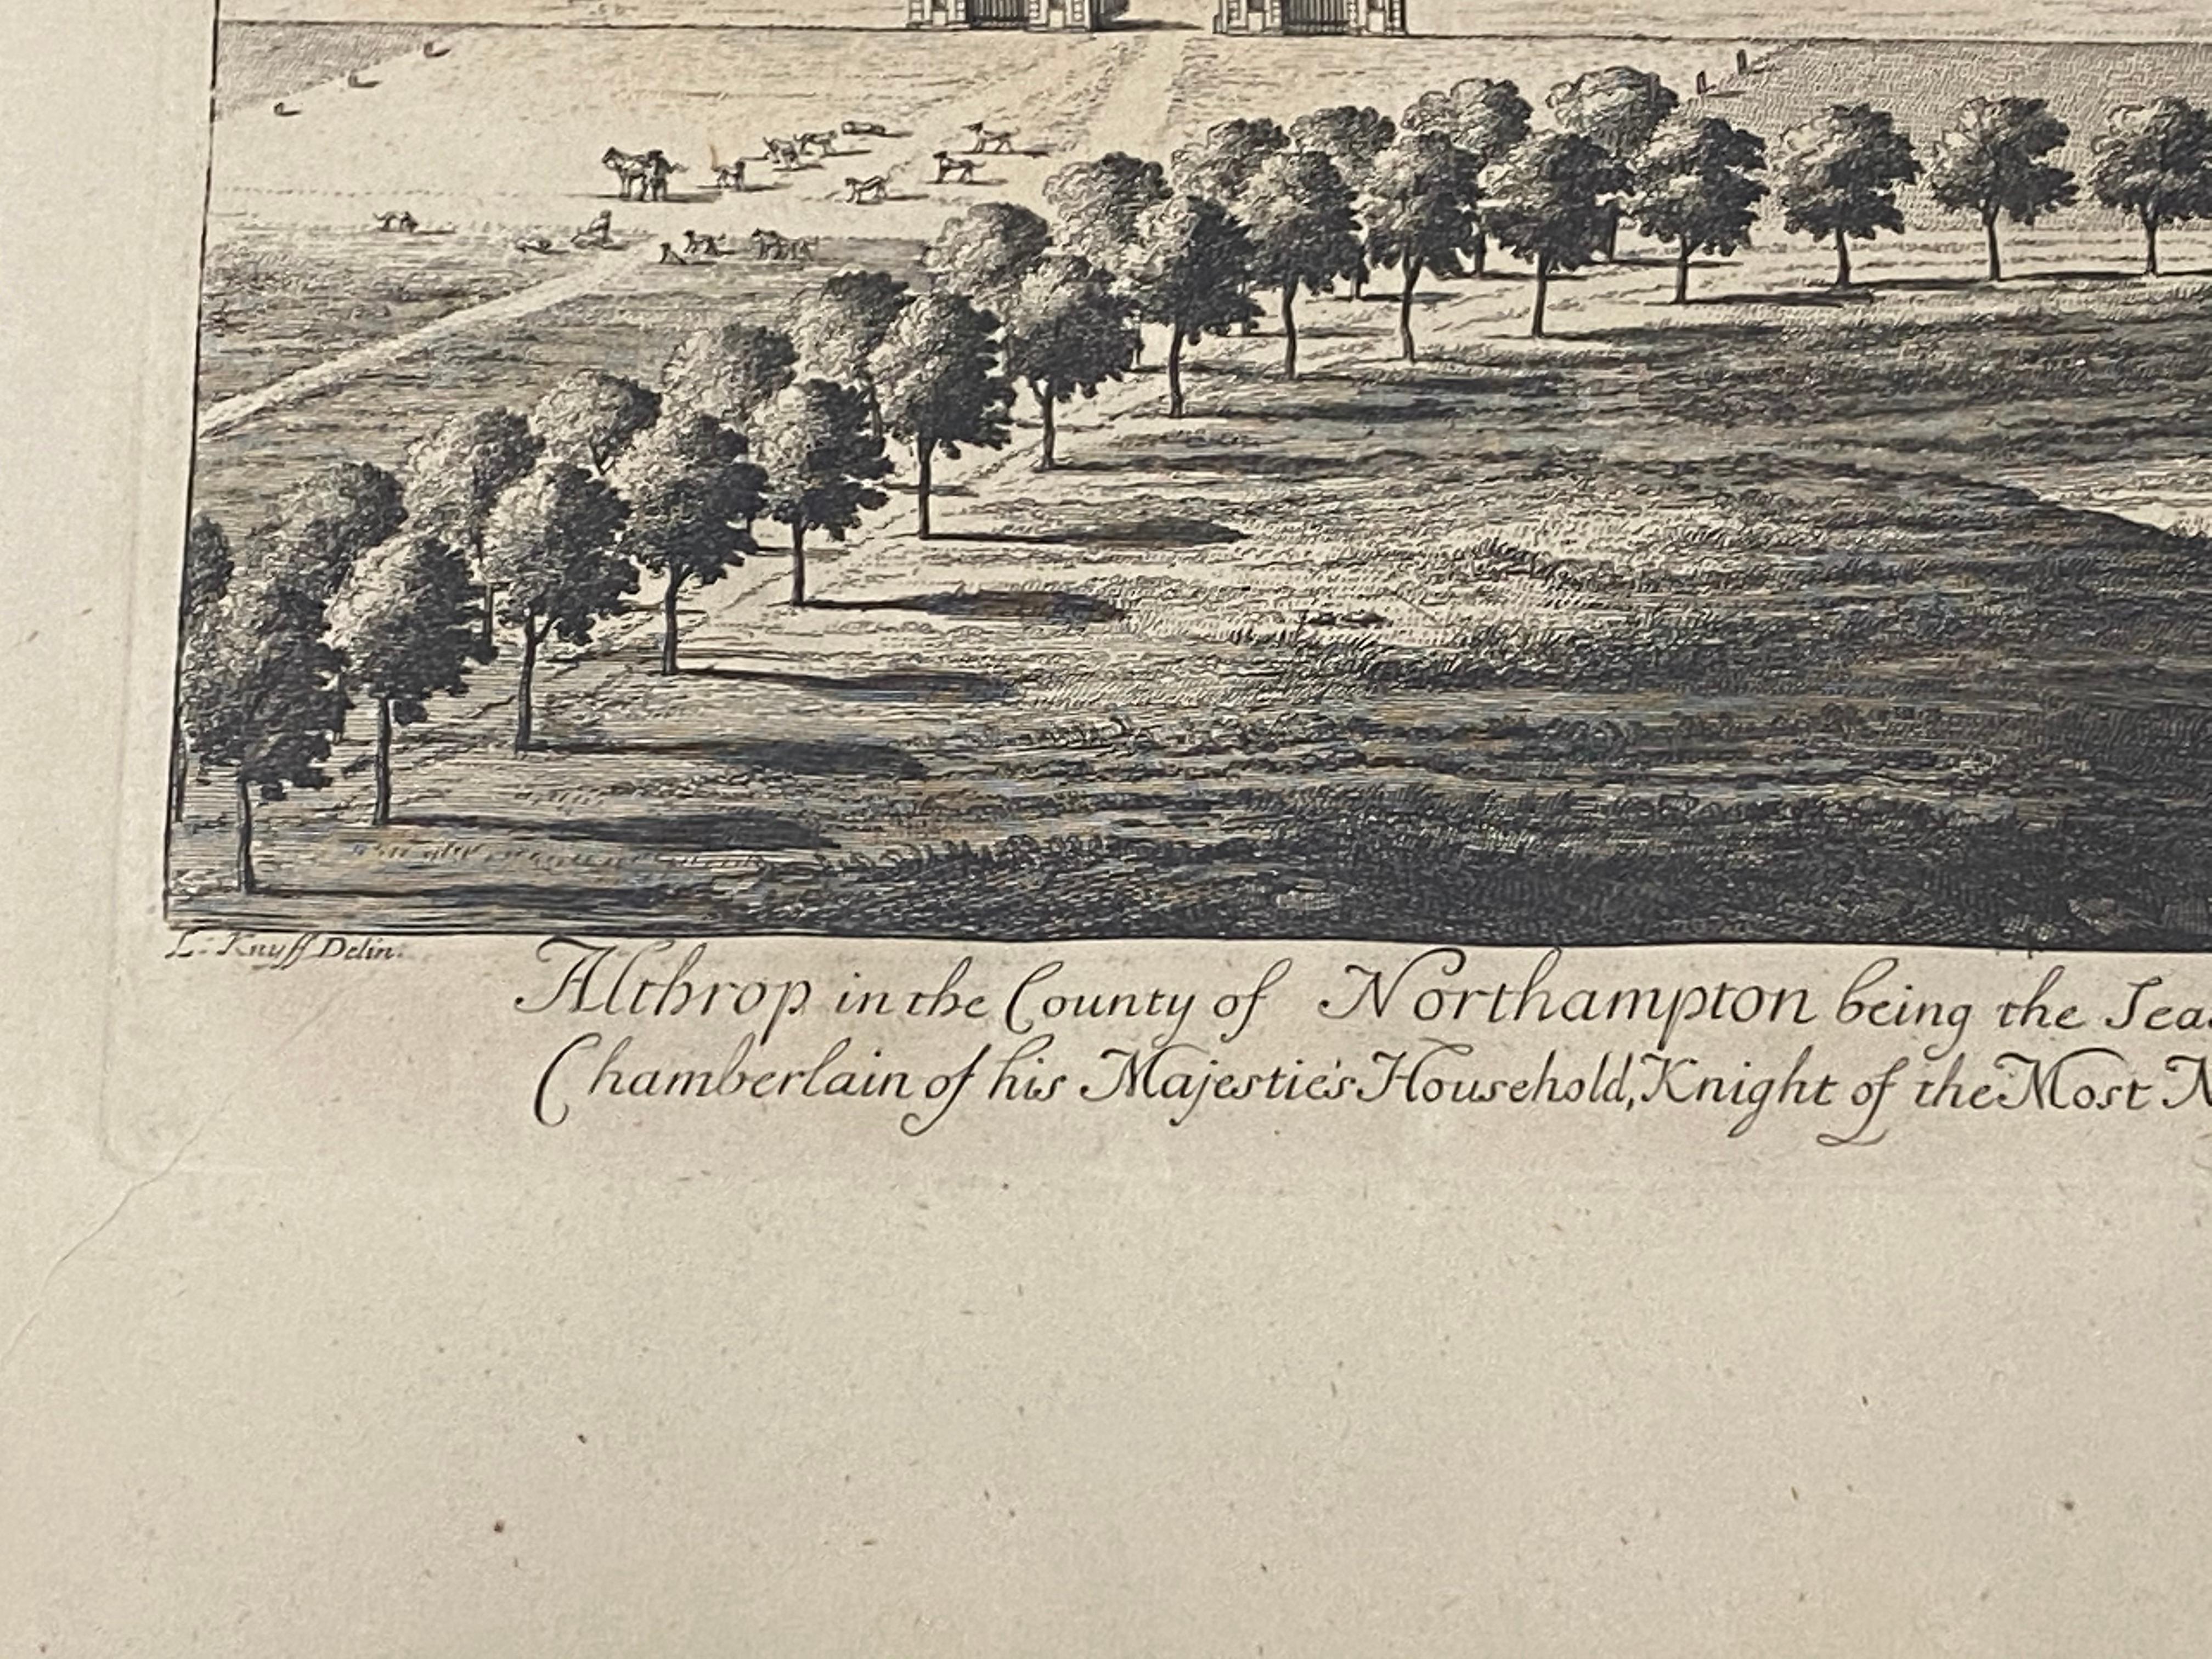 Gravure du début du XVIIIe siècle « Birdeye View of Althrop House and Gardens » (Vue d'un œil d'oiseau de la maison et des jardins d'Althrop) C.1724 - Print de Unknown